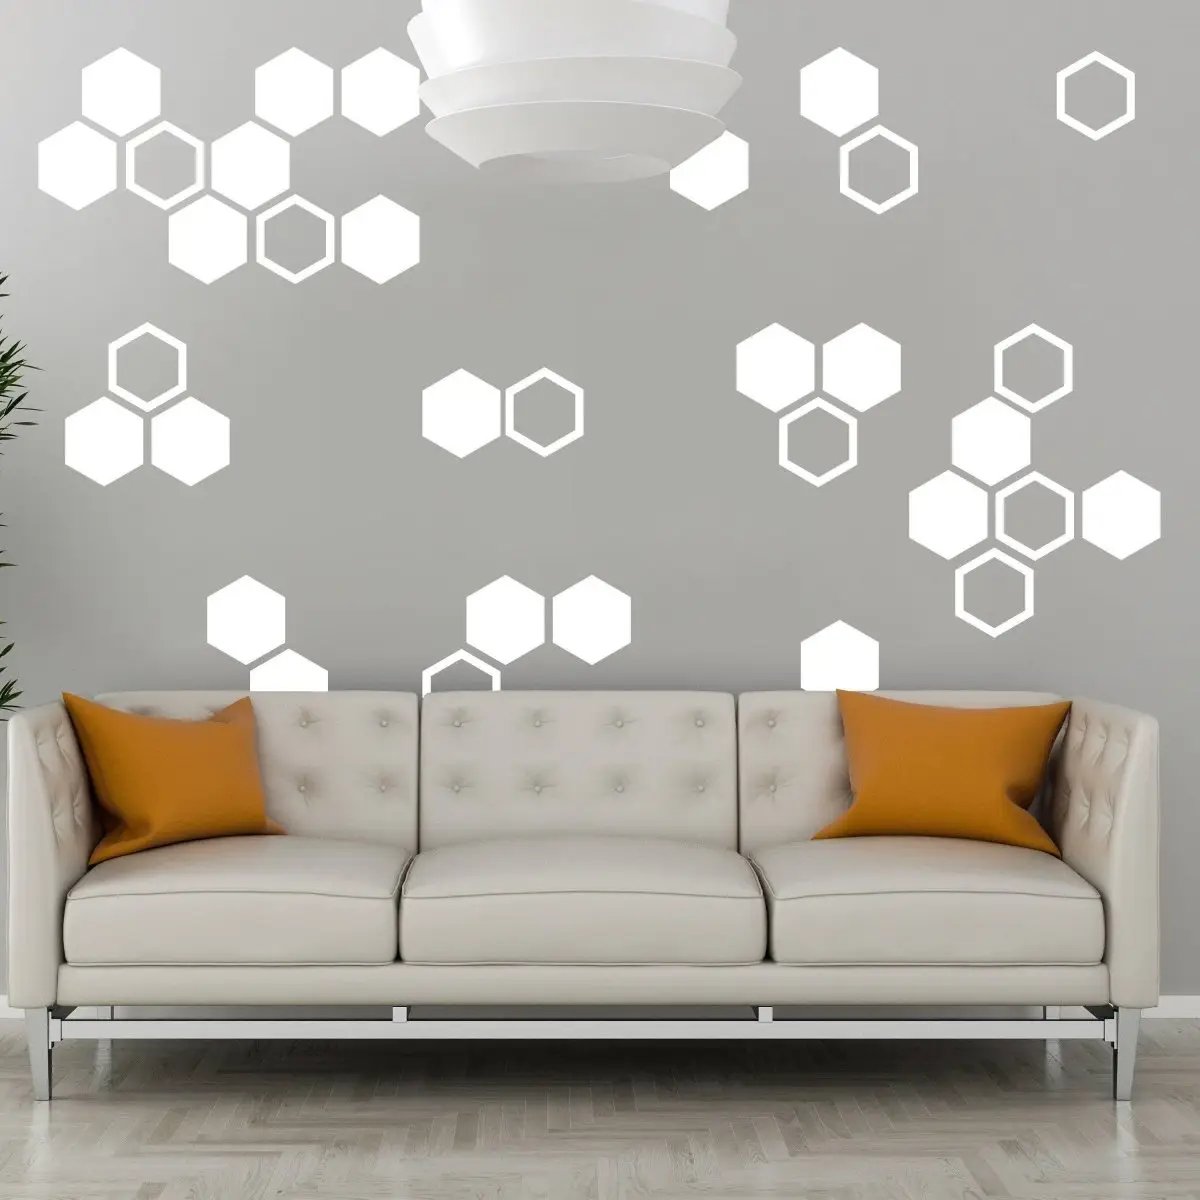 Hexagon Wall Decal Set/ Honeycomb Decor Decals/ Wall Decor/ Modern